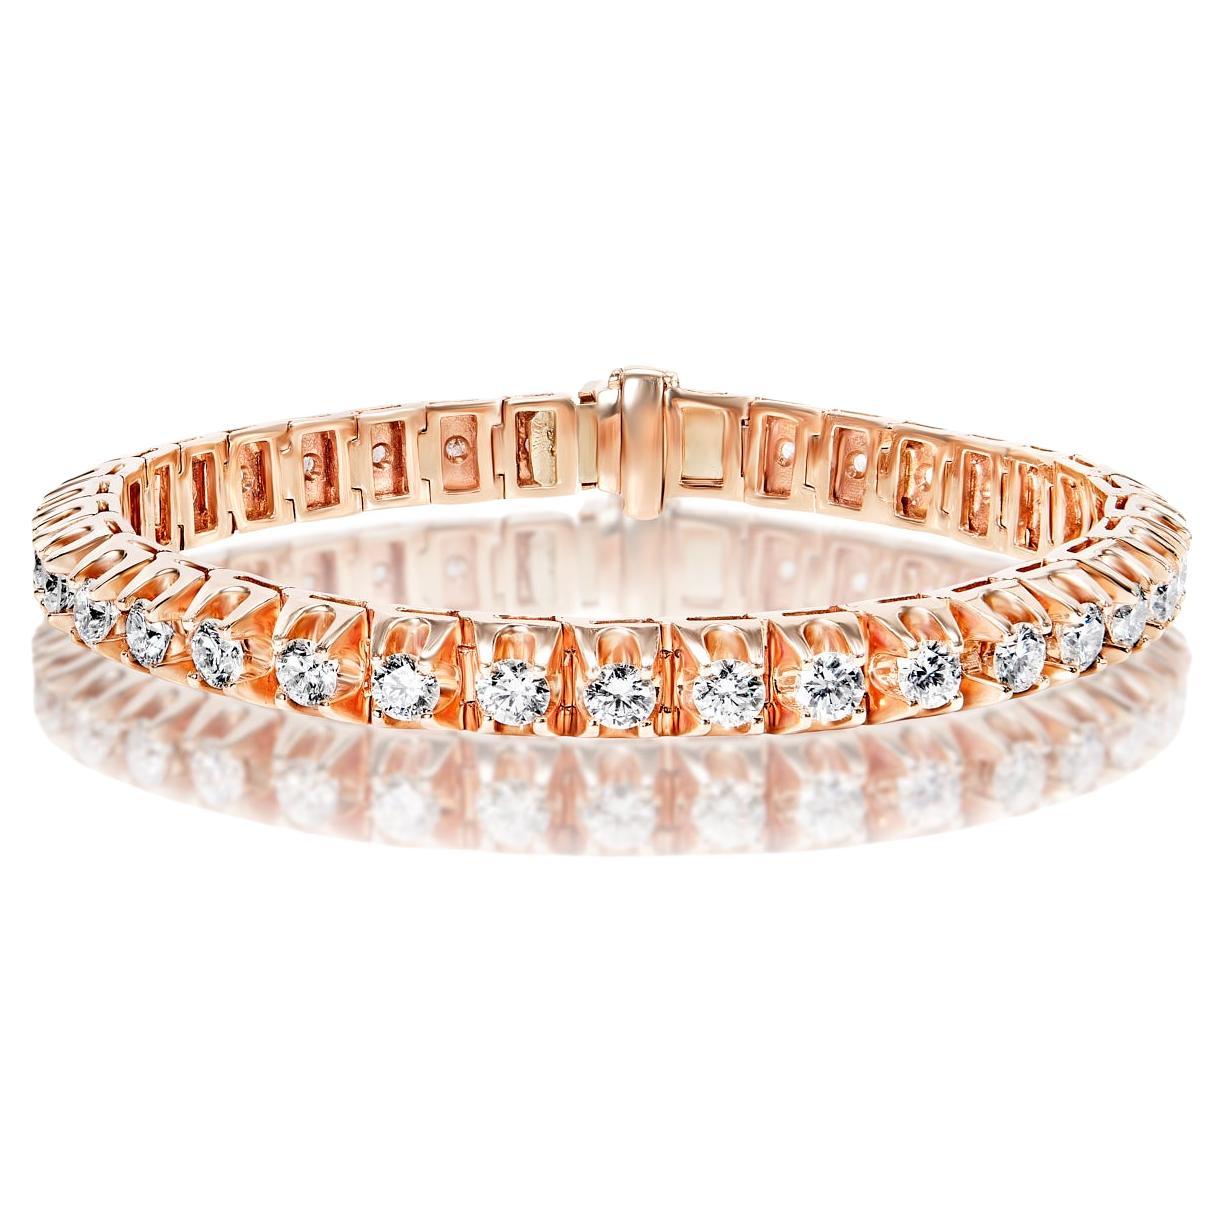 Bracelet tennis à rangée unique de diamants ronds et brillants de 11 carats